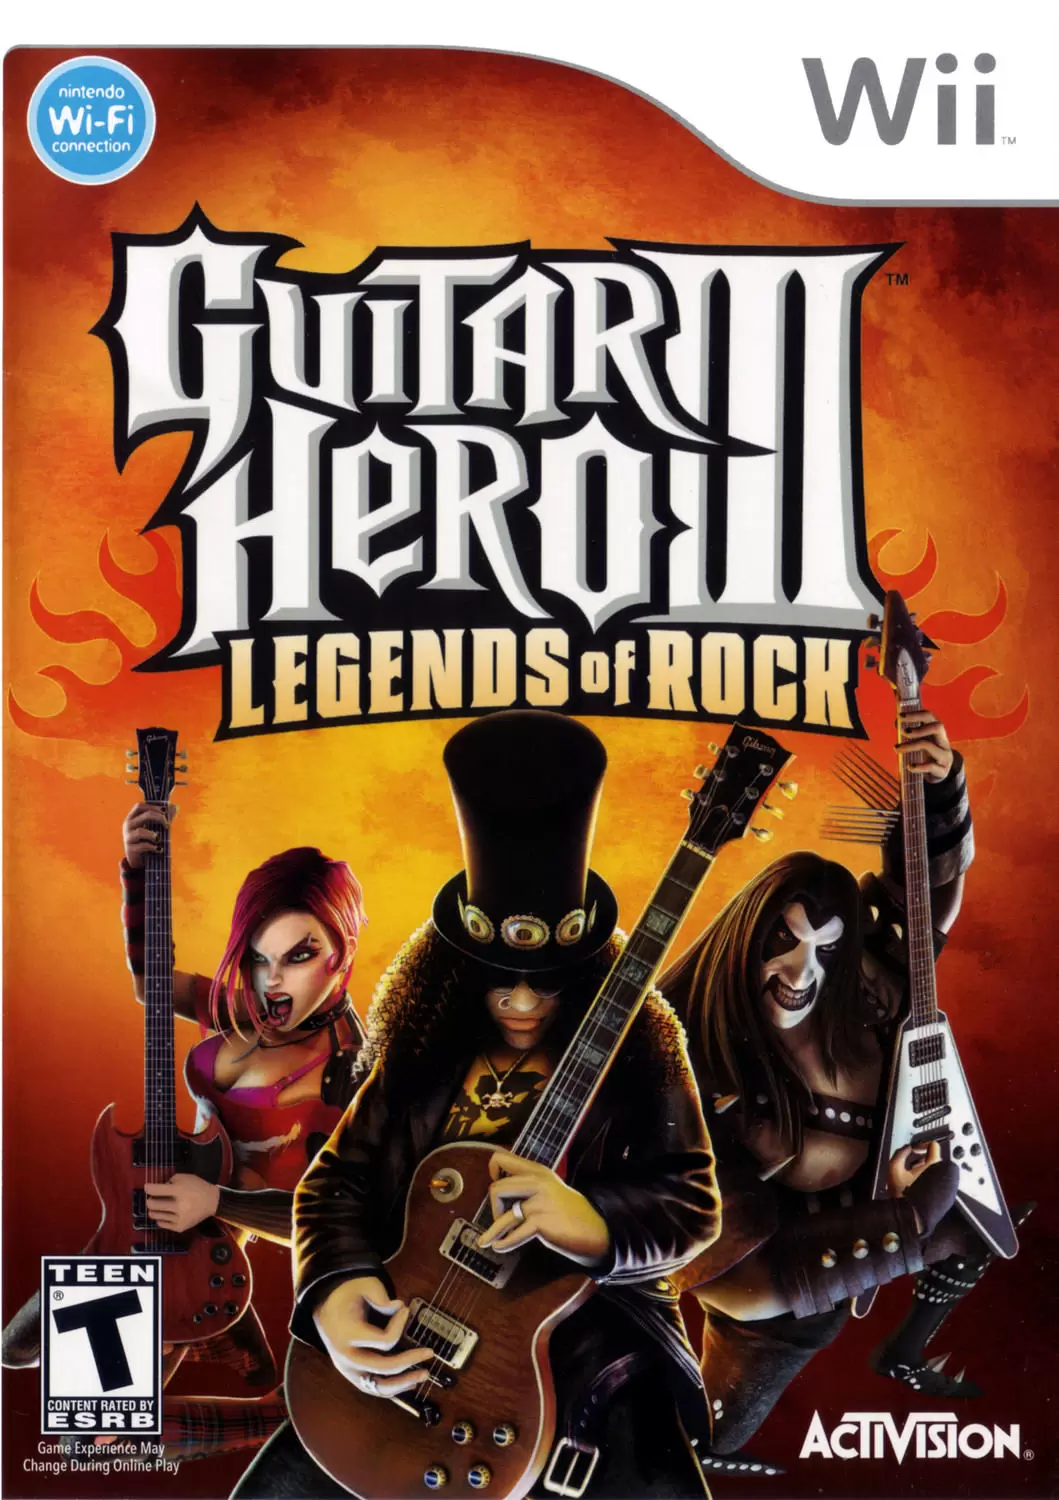 Nintendo Wii Games - Guitar Hero III: Legends of Rock